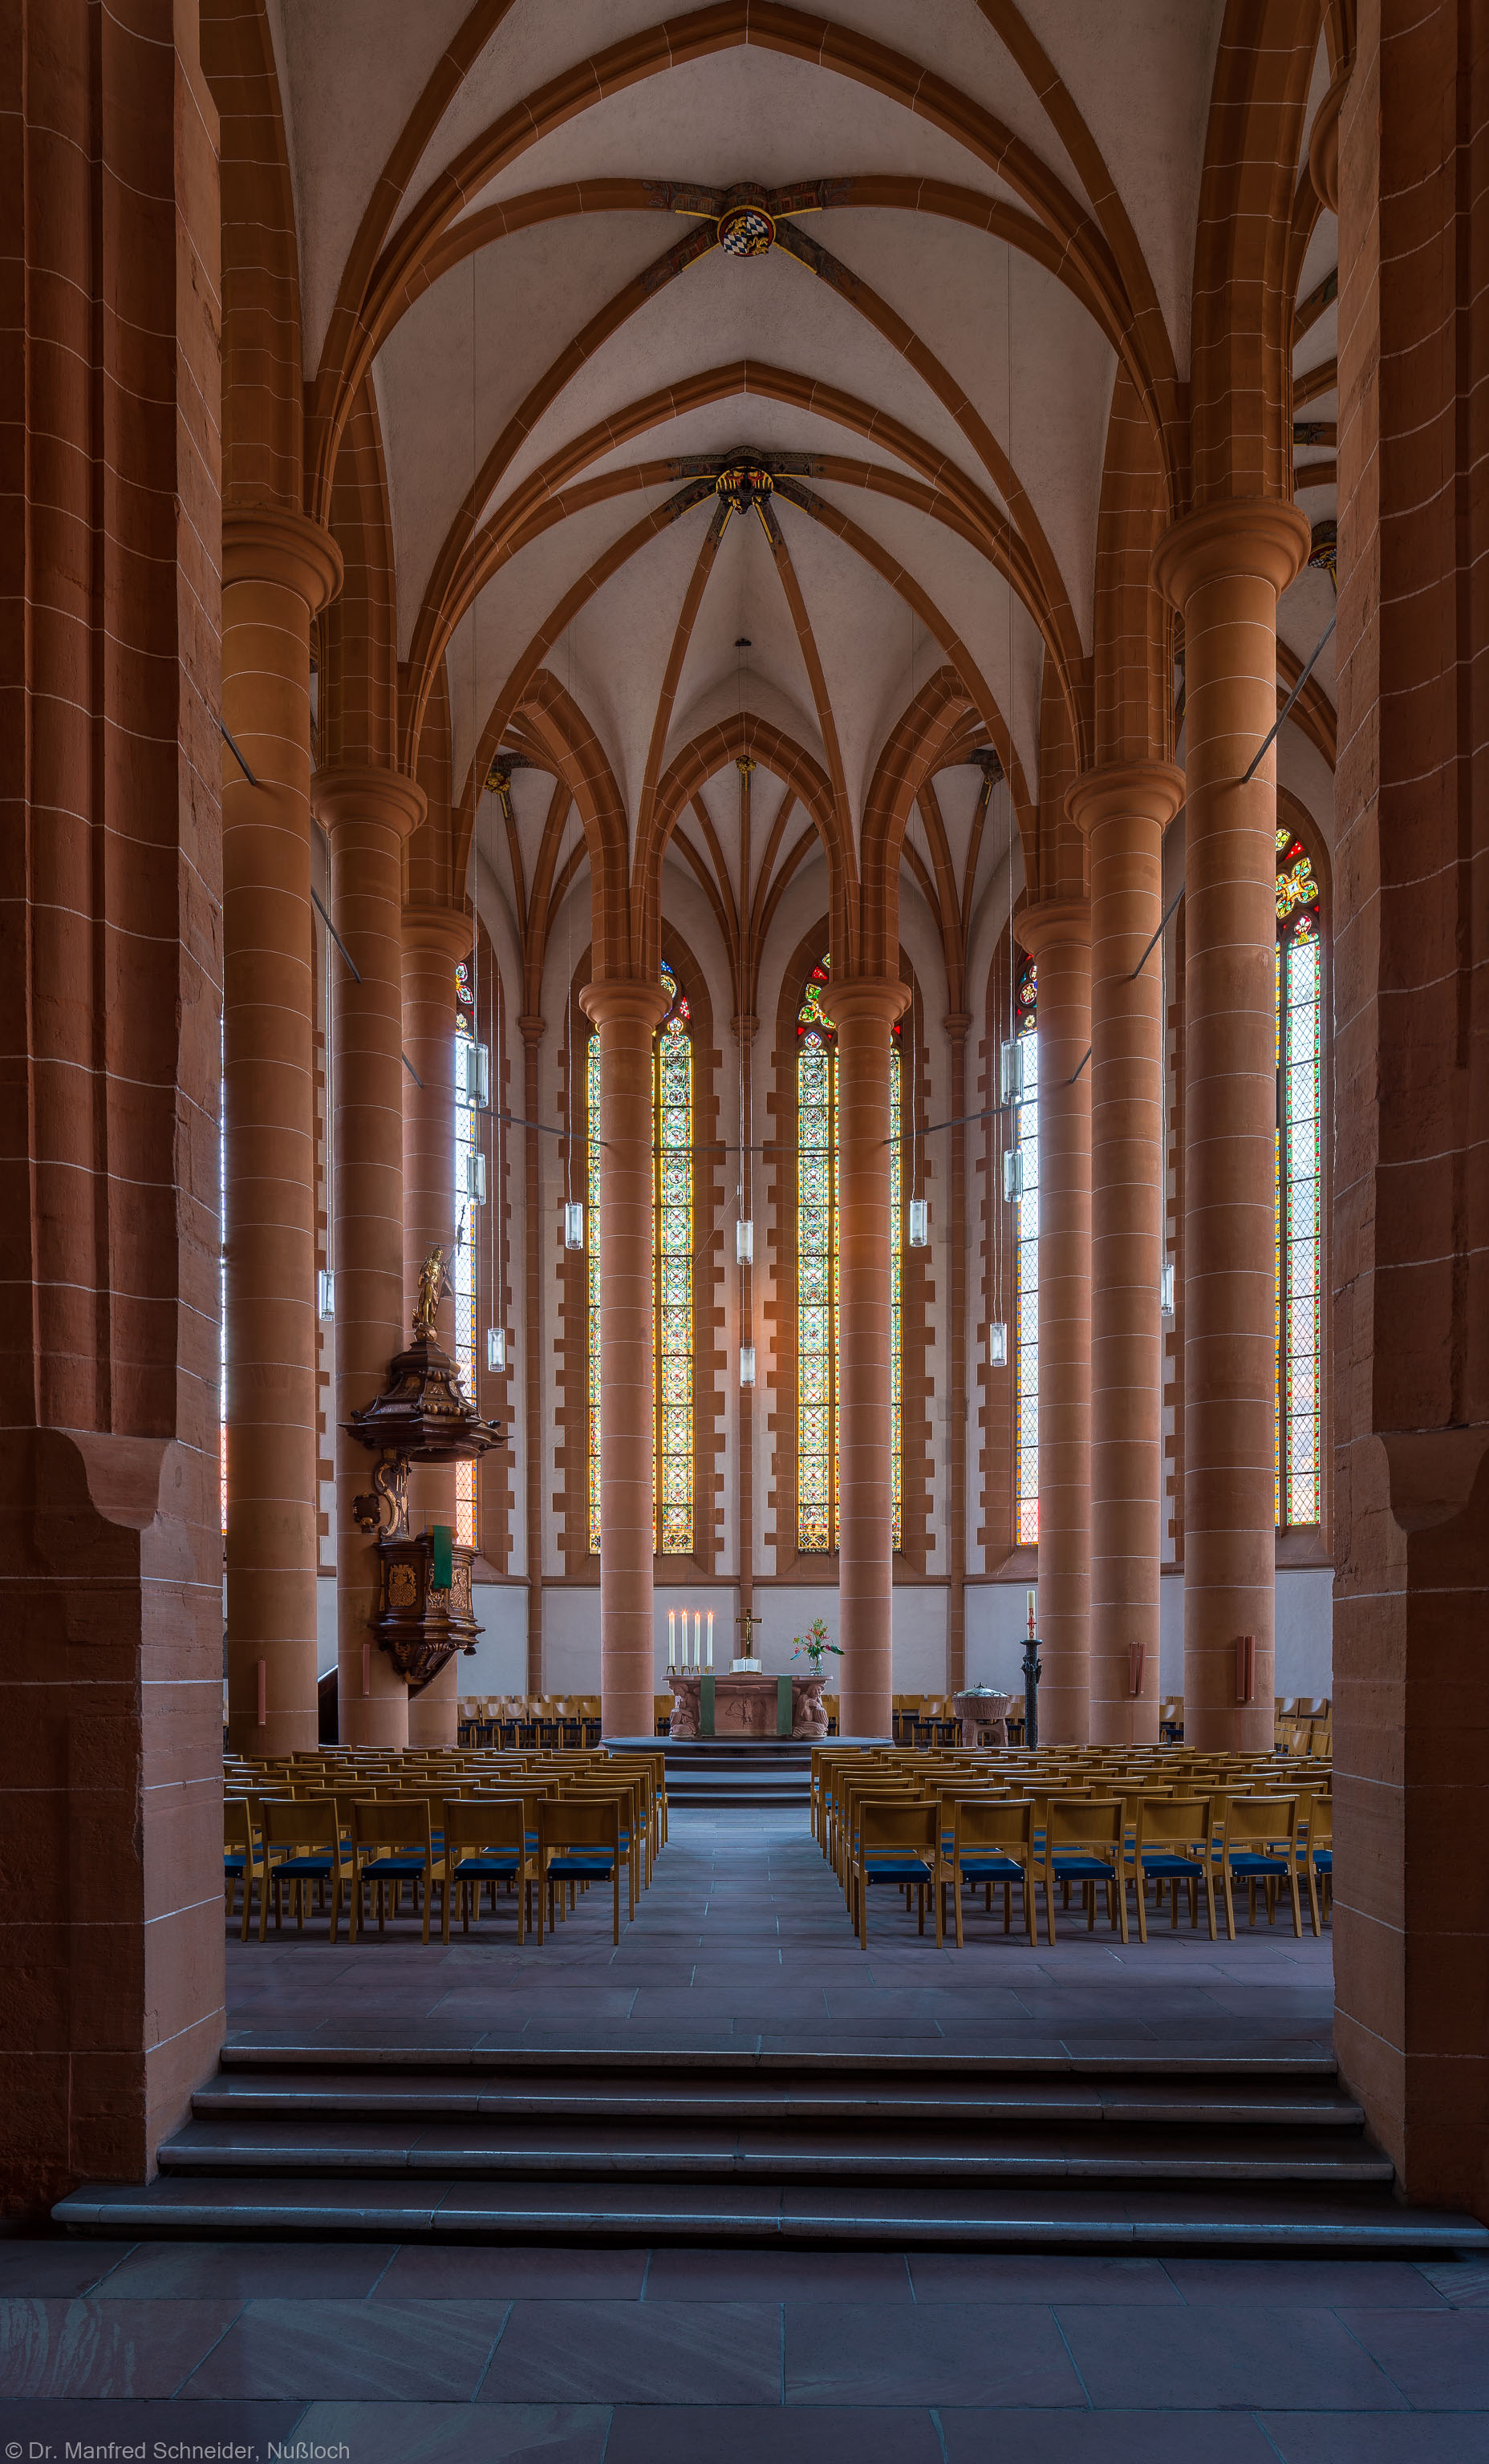 Heidelberg - Heiliggeistkirche - Chor - Blick in den Chor mit Triumphbogenpfeiler, Säulen, Gewölbe, Kanzel und Altar (aufgenommen im September 2014, am frühen Abend)